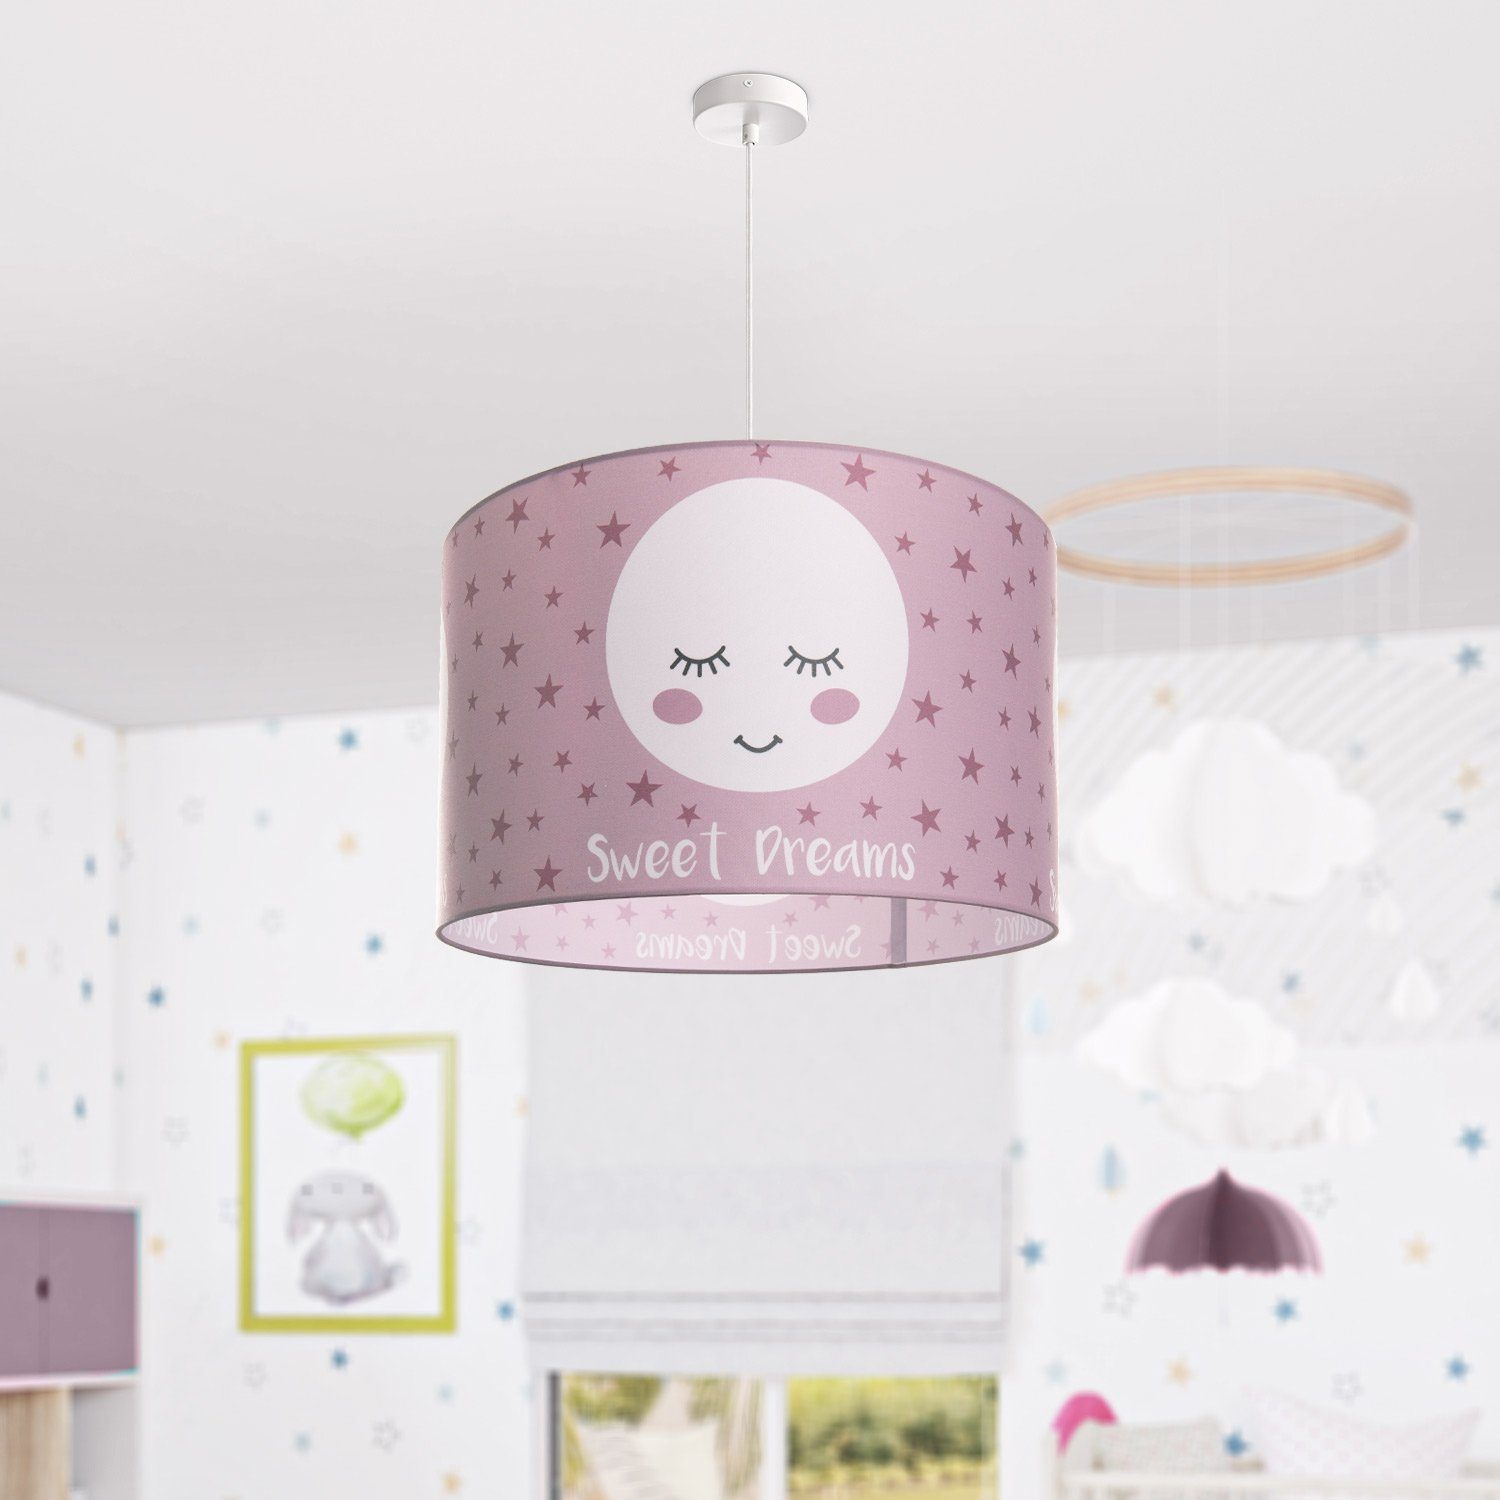 Lampe Kinderzimmer Mond-Motiv, Paco Aleyna Kinderlampe E27 ohne Home LED 103, Leuchtmittel, Pendelleuchte Deckenlampe